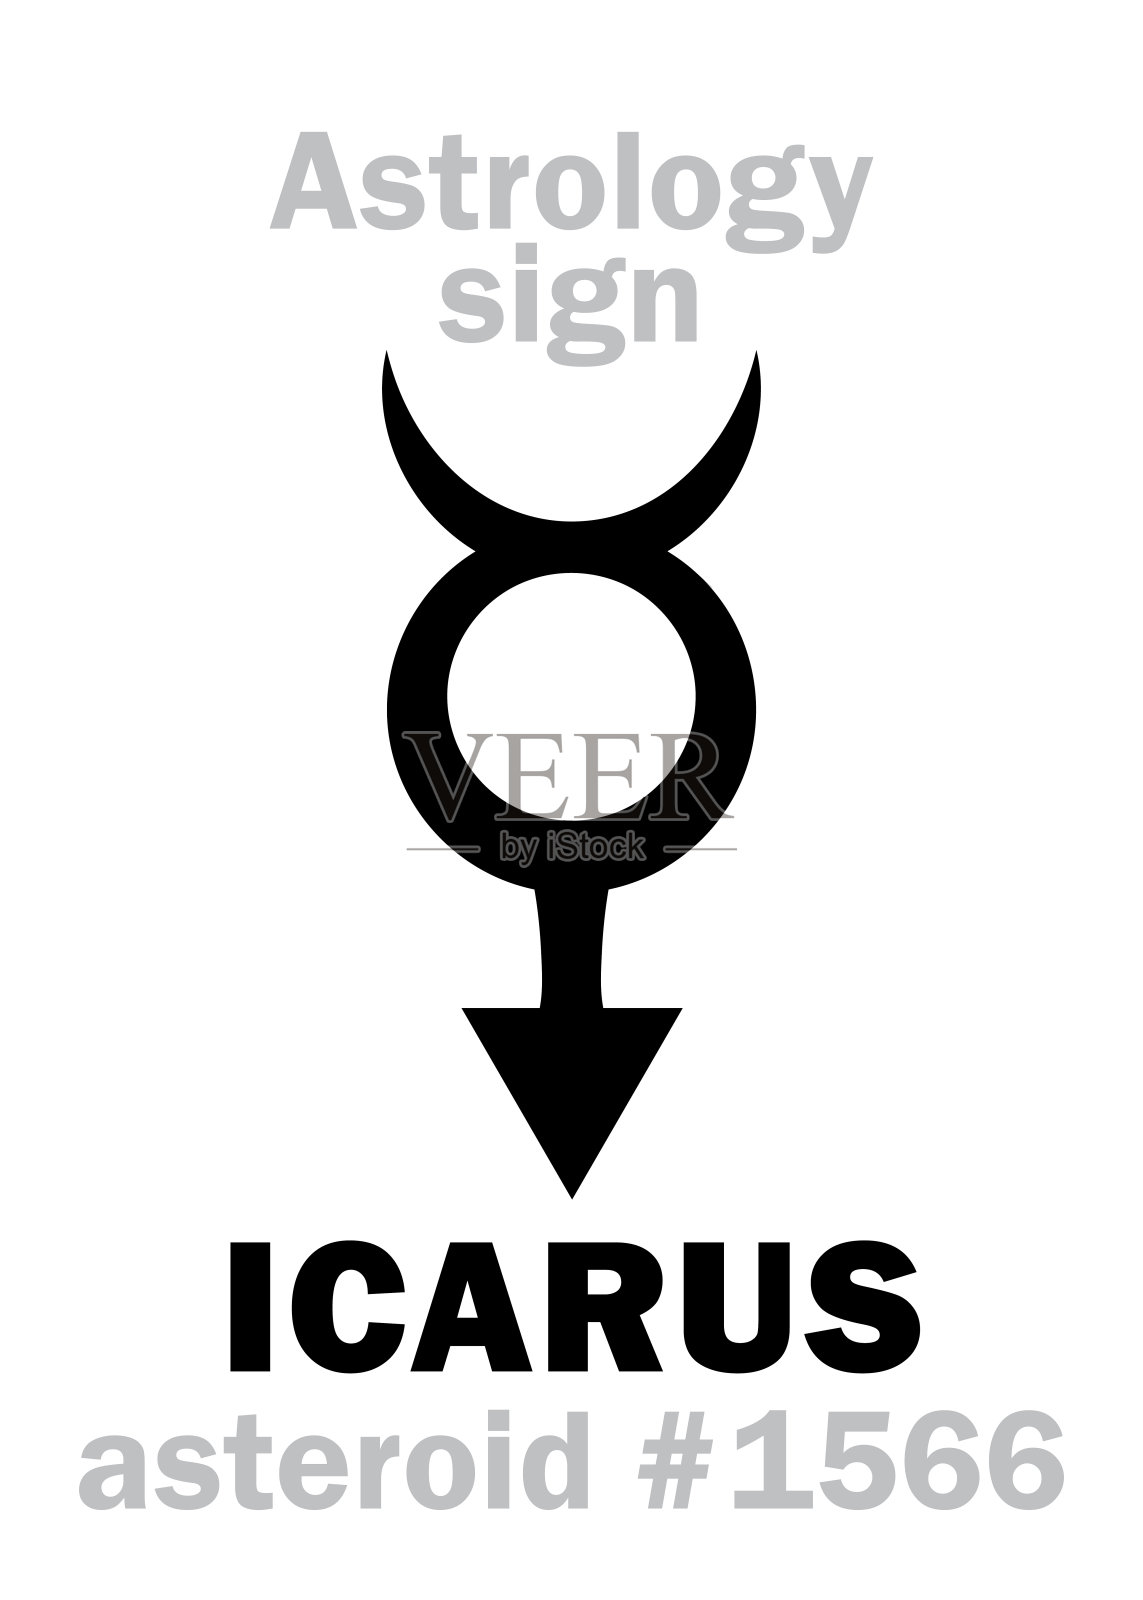 占星字母表:伊卡洛斯，小行星#1566。象形文字符号(单符号)。设计元素图片